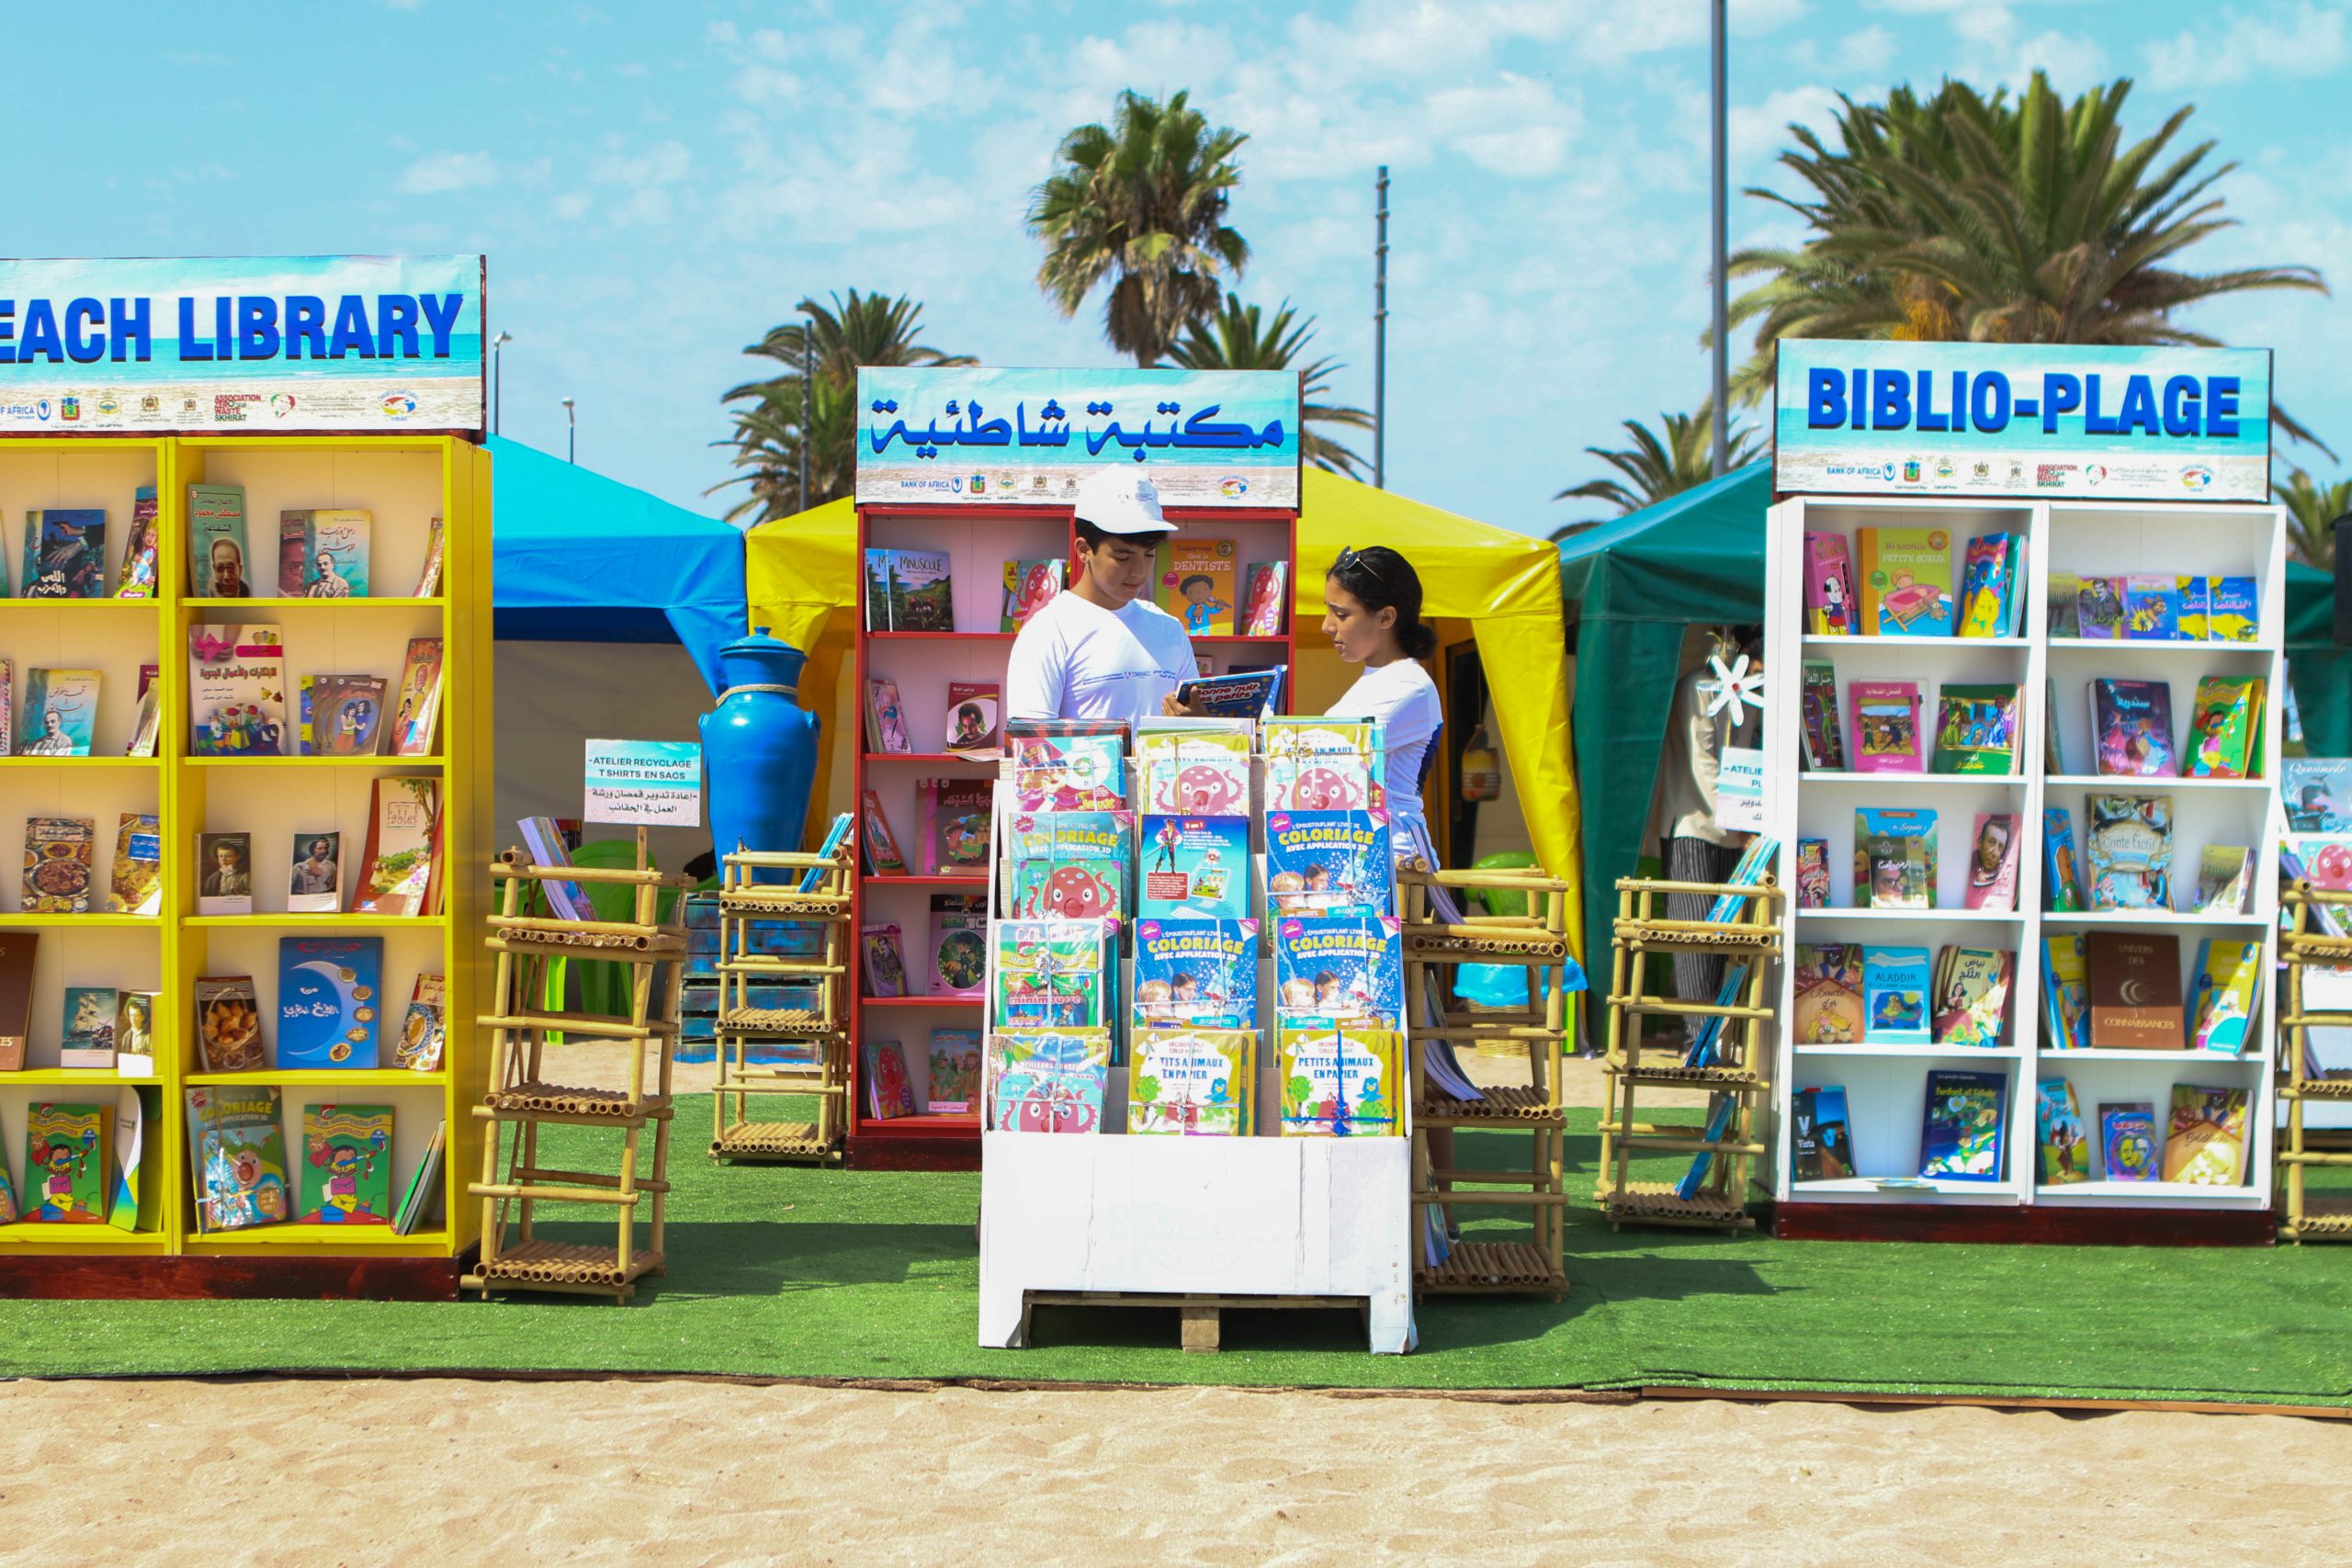 Mises en place avec passion et soin, des bibliothèques fleurissent dans les plages du Royaume pour marquer l’été 2022